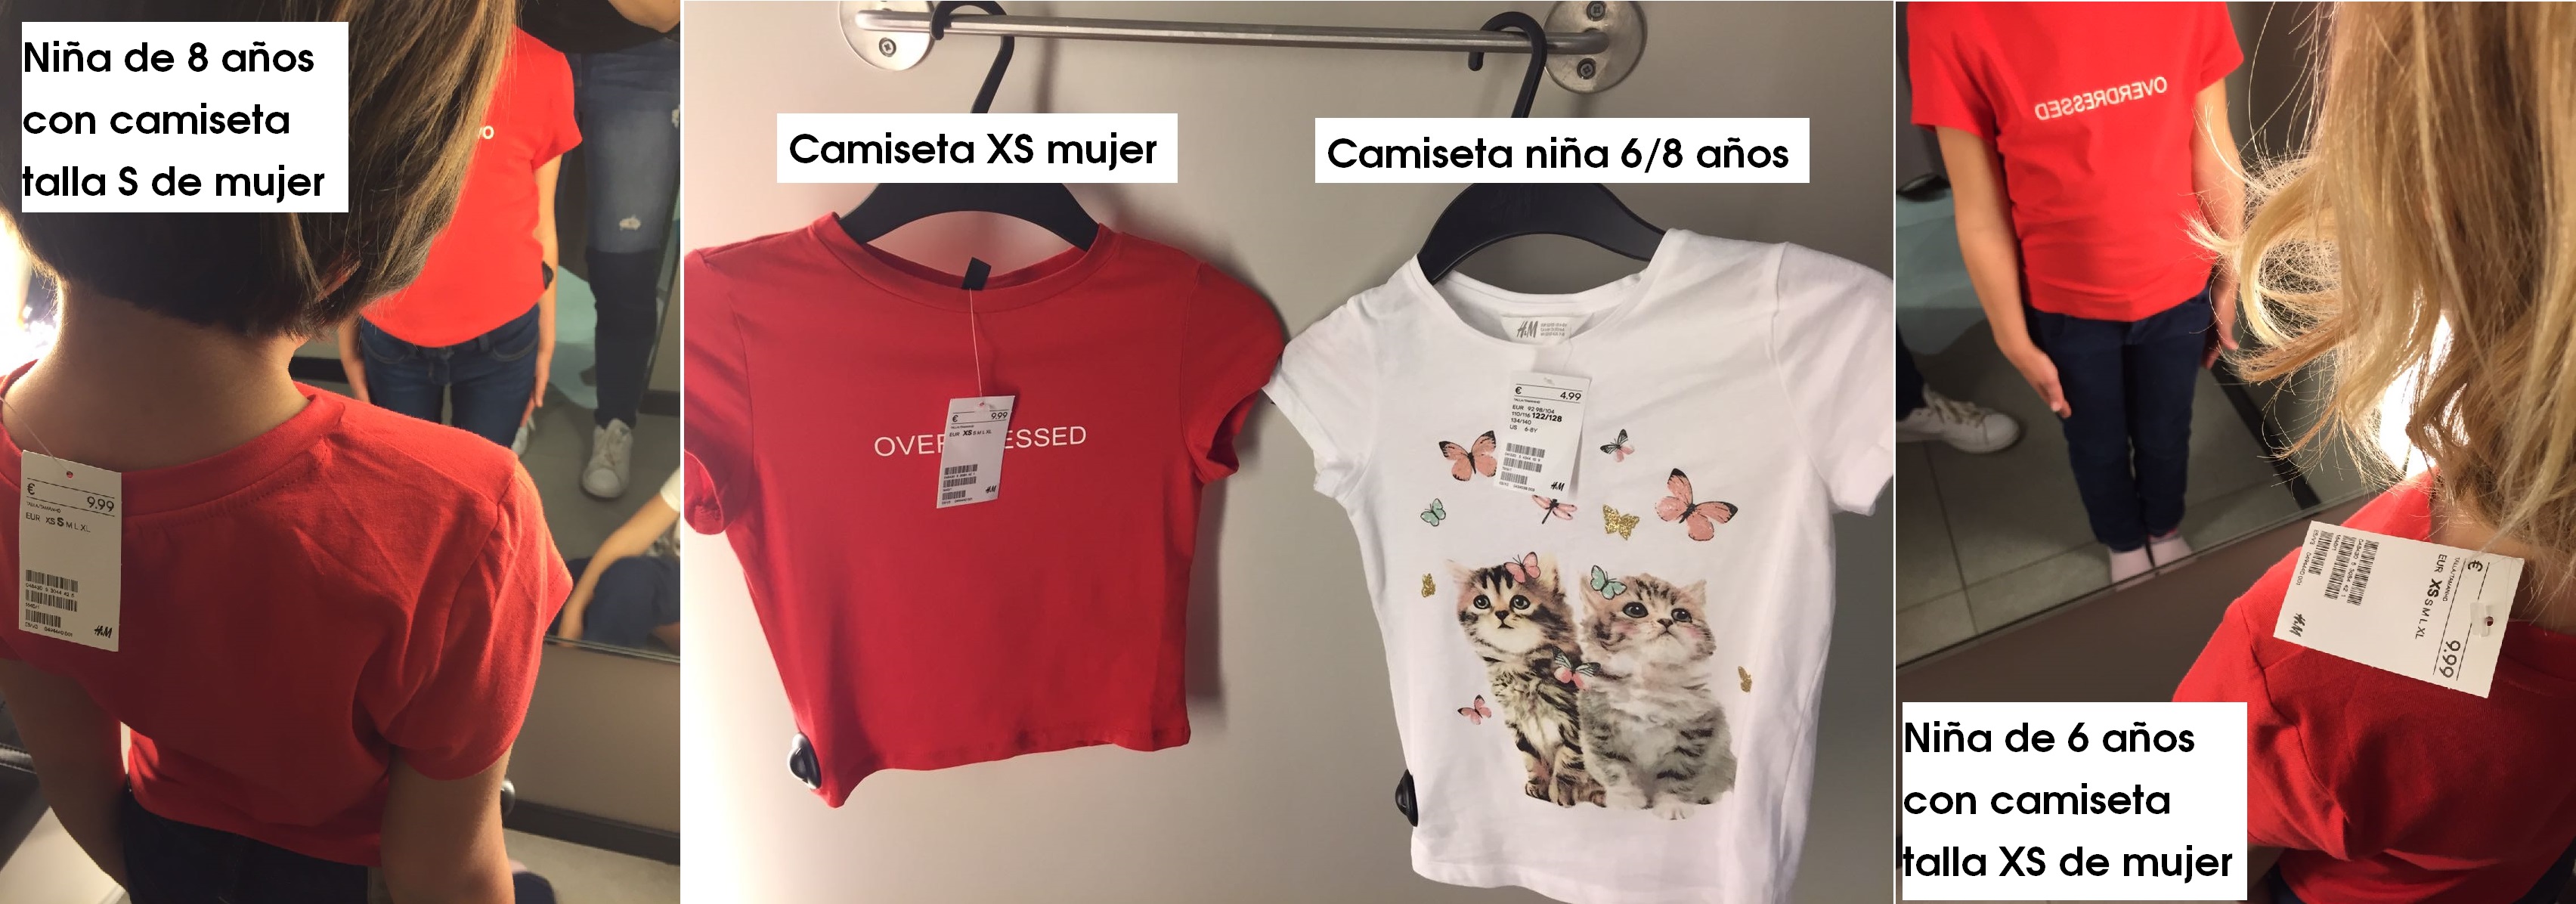 Camisetas de mujer que no caben a una niña de 8 años